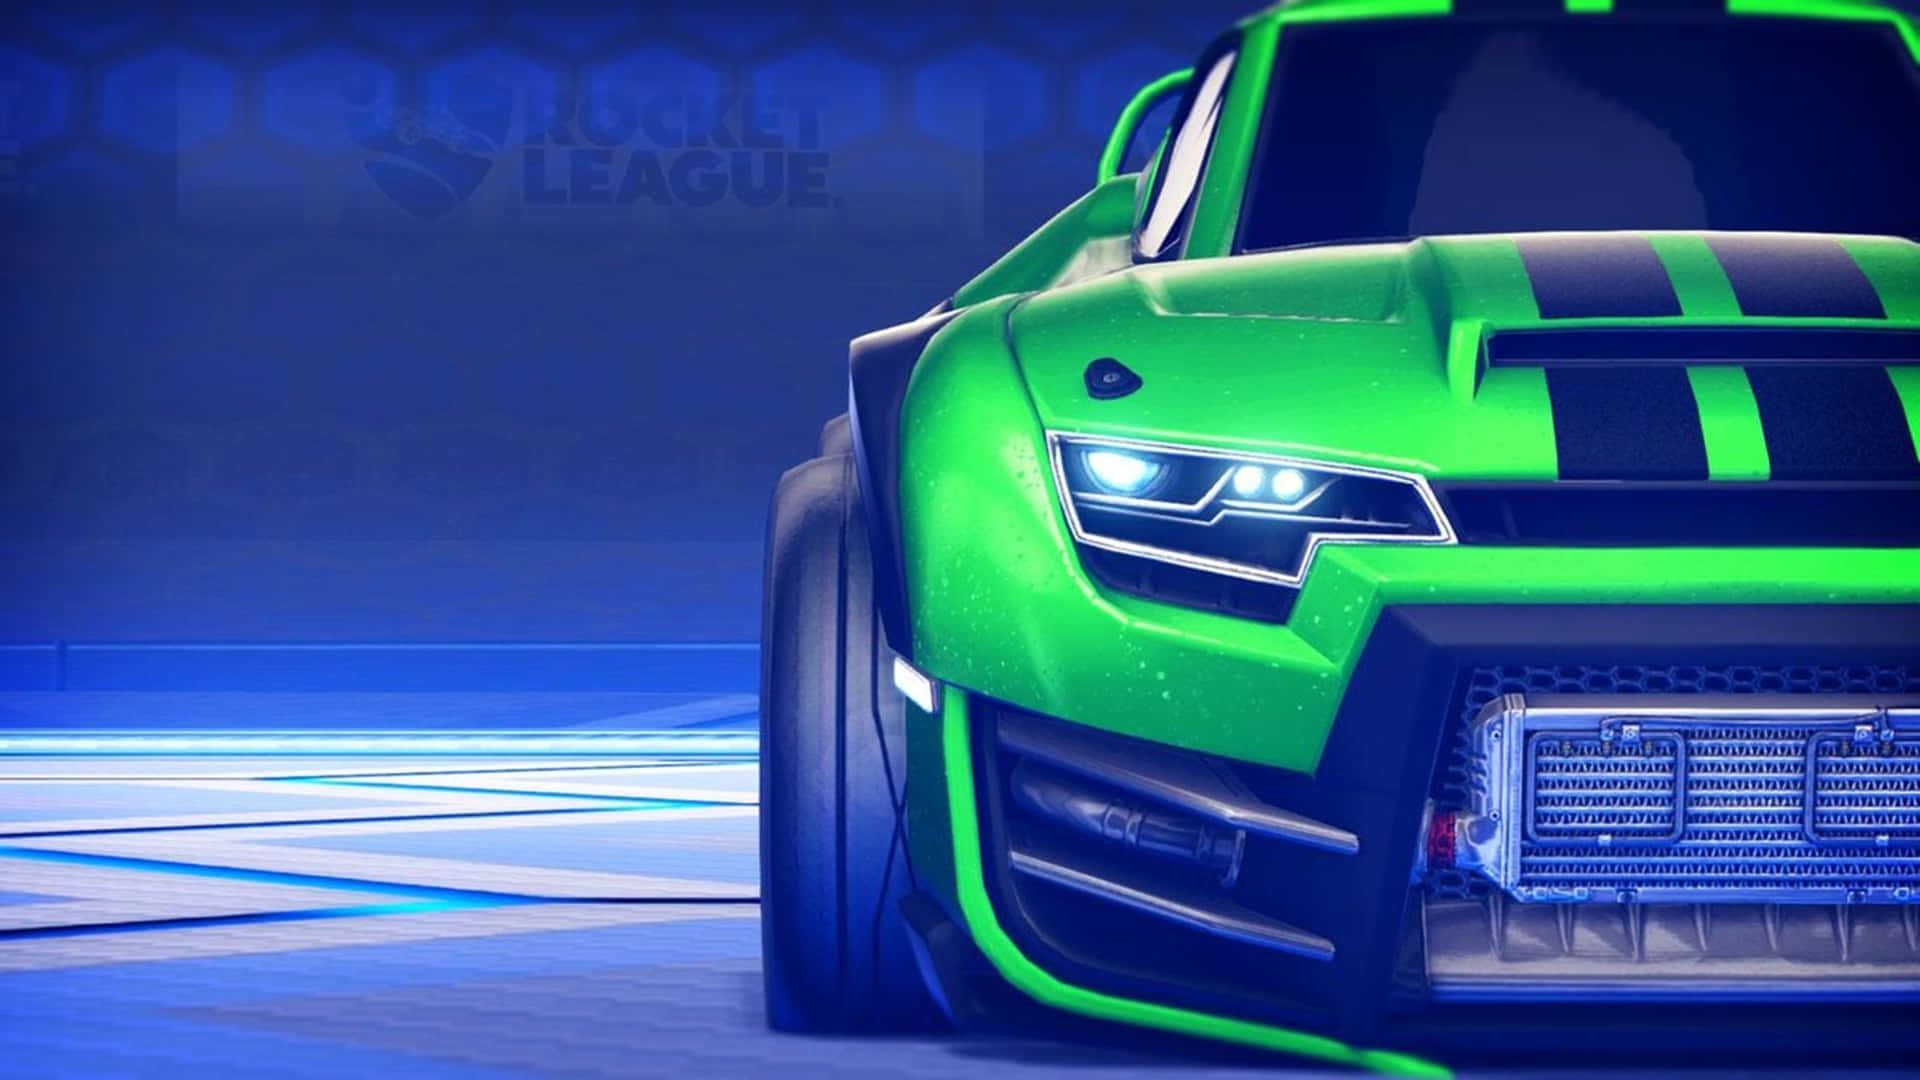 Green Muscle Car Rocket League 4K Wallpaper